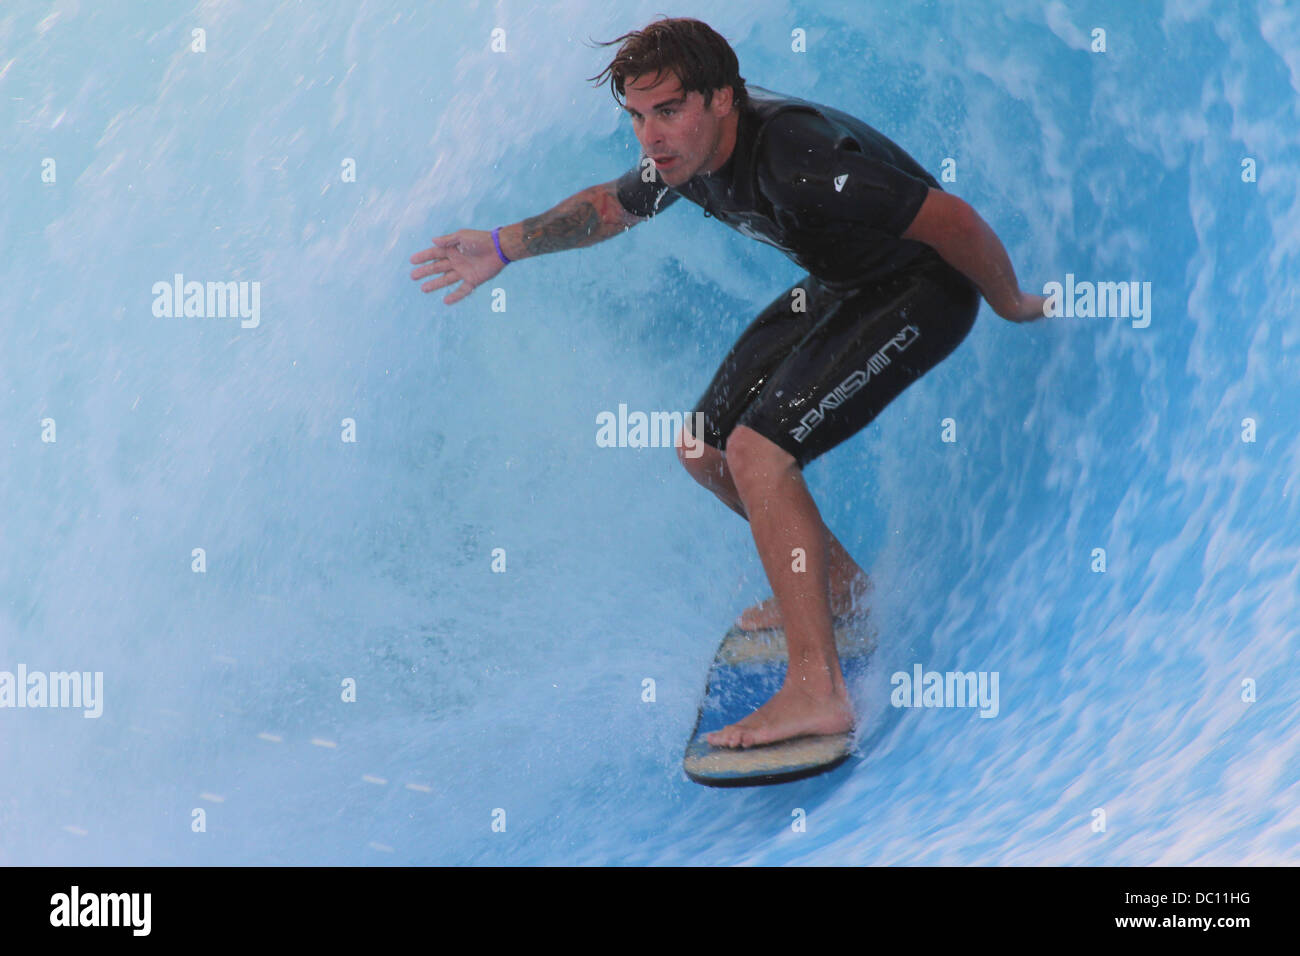 surfer sur les vagues Banque D'Images